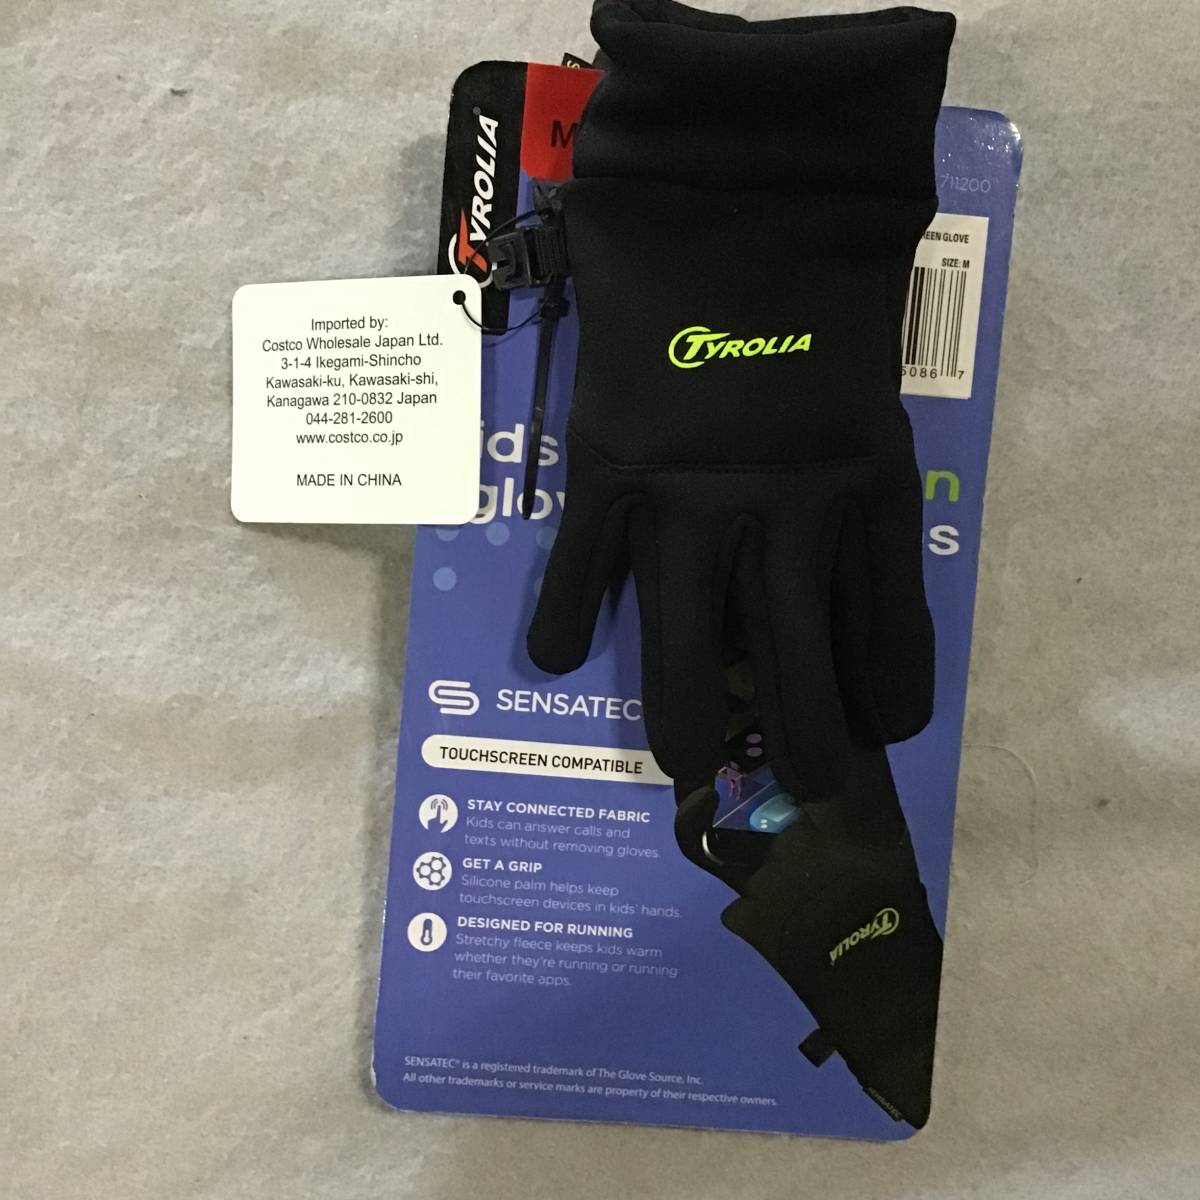 [*H 10204] новый товар не использовался Chiroria Kids перчатка рукавица сенсорный экран соответствует перчатки затраты ko запас 36 комплект подарок flima подарок 